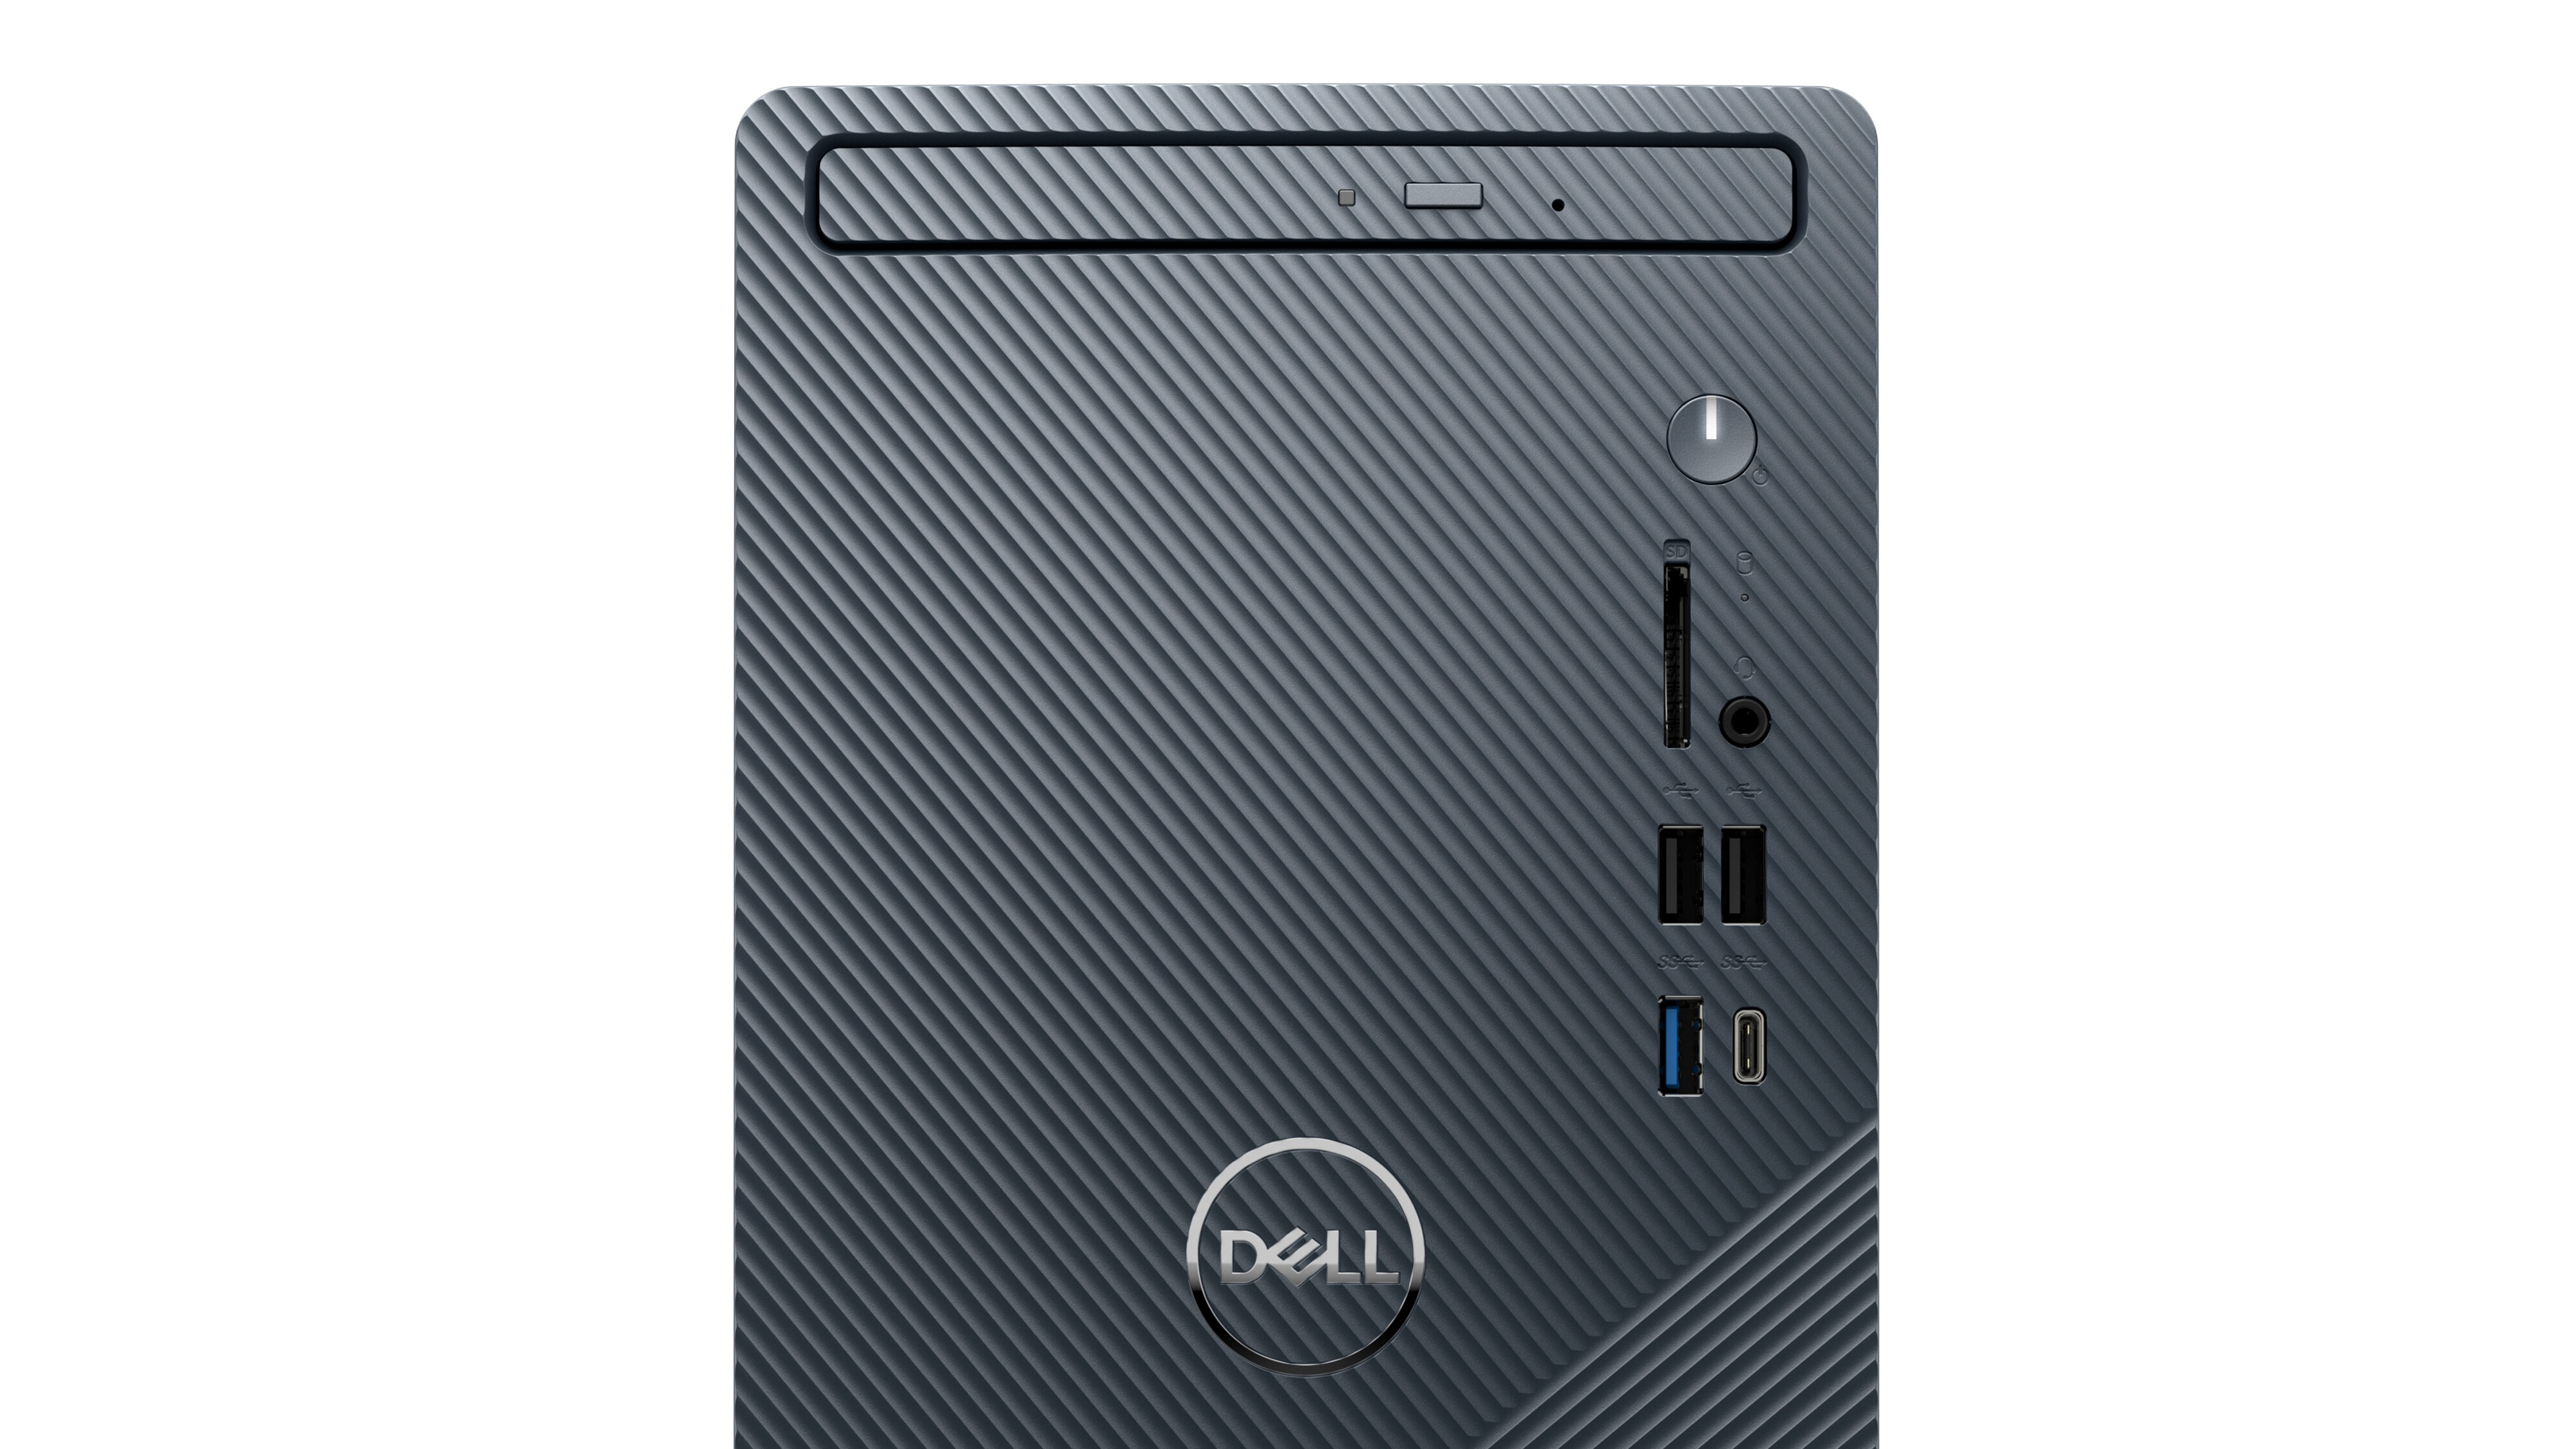 Abbildung eines halben Dell Inspiron 3910 Desktop-PCs vor weißem Hintergrund.